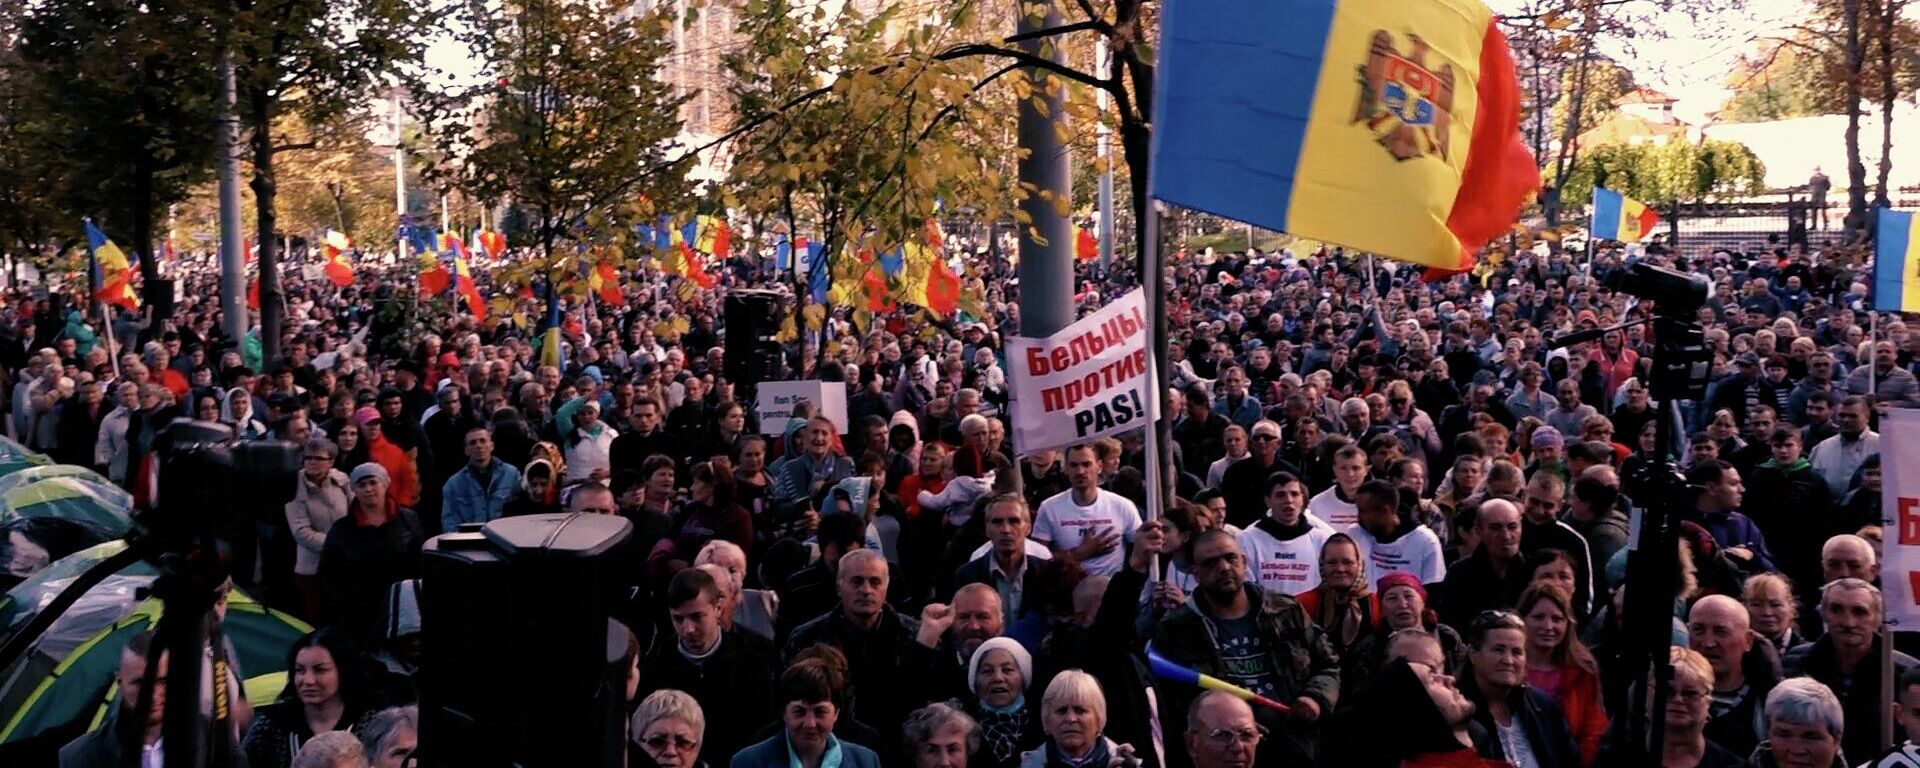 Снять майку правильно: о чем каламбурят на протестах в Молдове - Sputnik Молдова, 1920, 02.10.2022